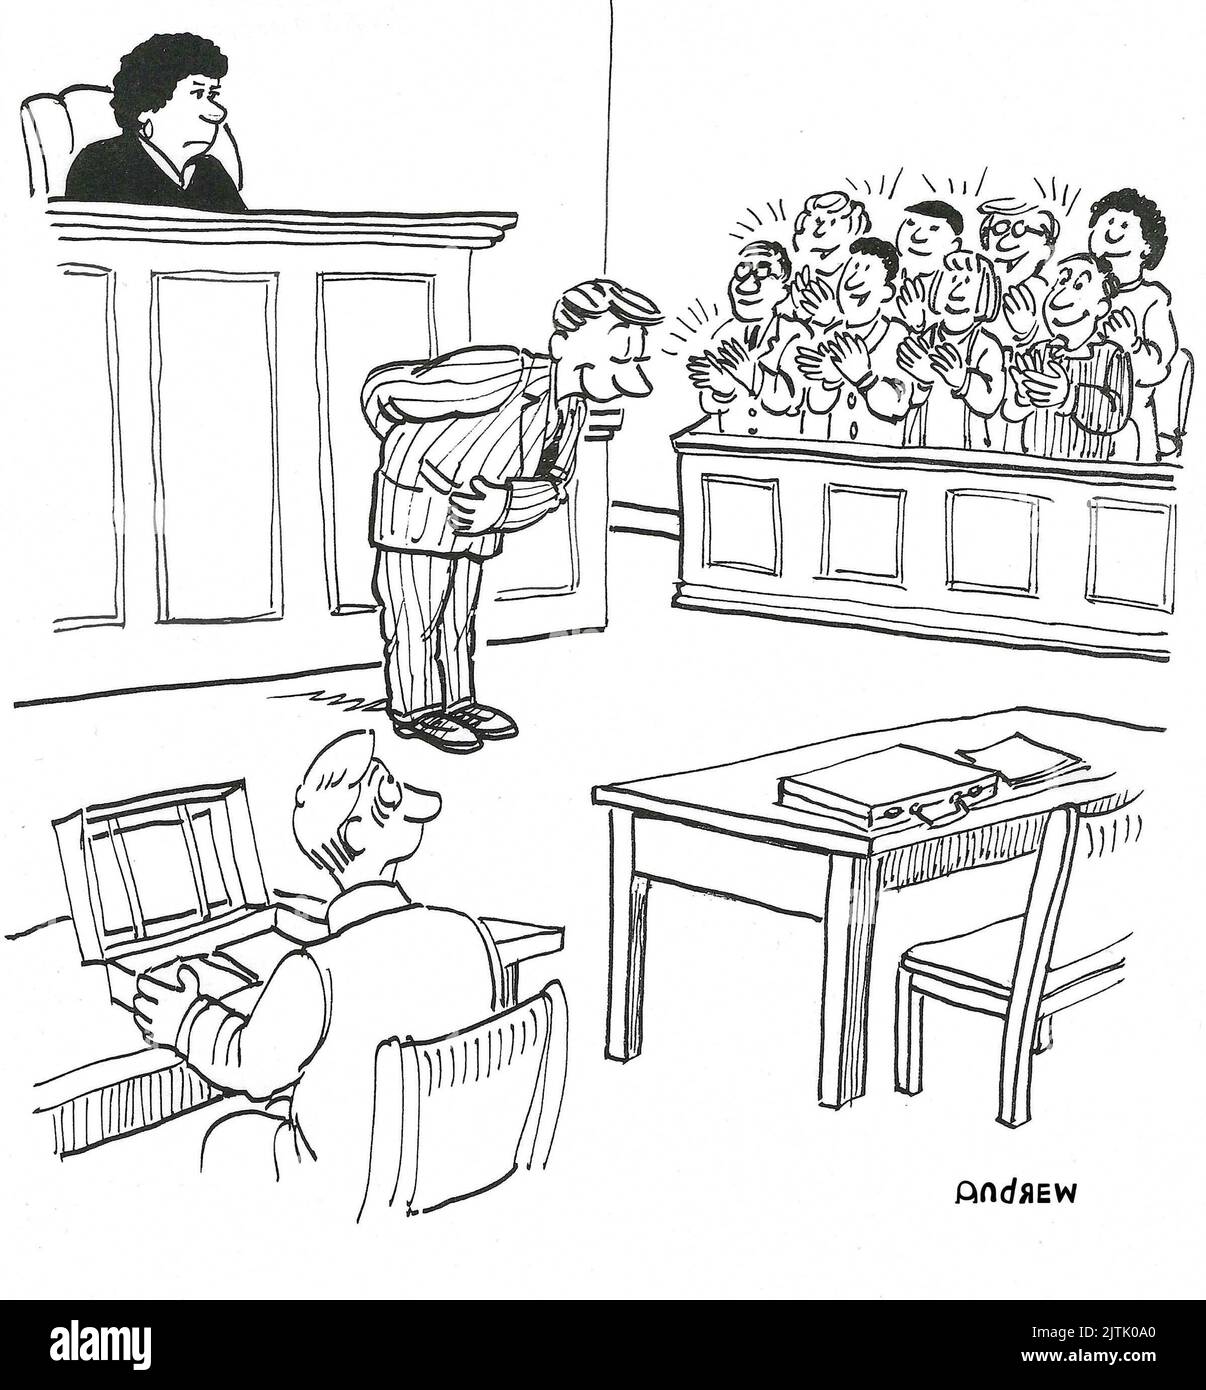 Un avocat a impressionné le jury. Banque D'Images